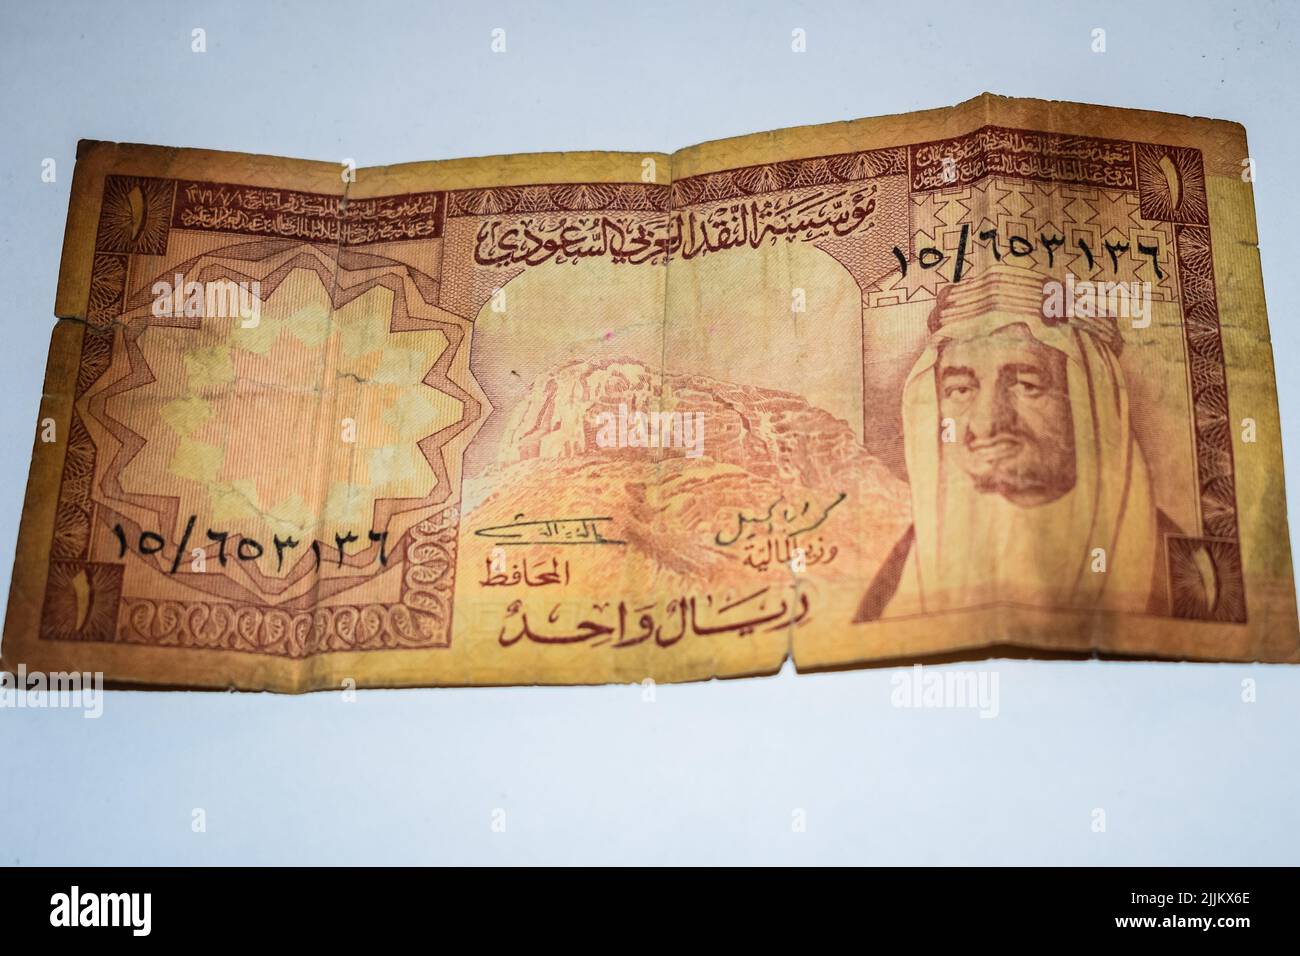 Raro Vecchio Riyal di Arabia Saudita Foreign Currency Note, Arabia Saudita Old Foreign Currency Note, molto vecchia valuta con sfondo bianco Foto Stock